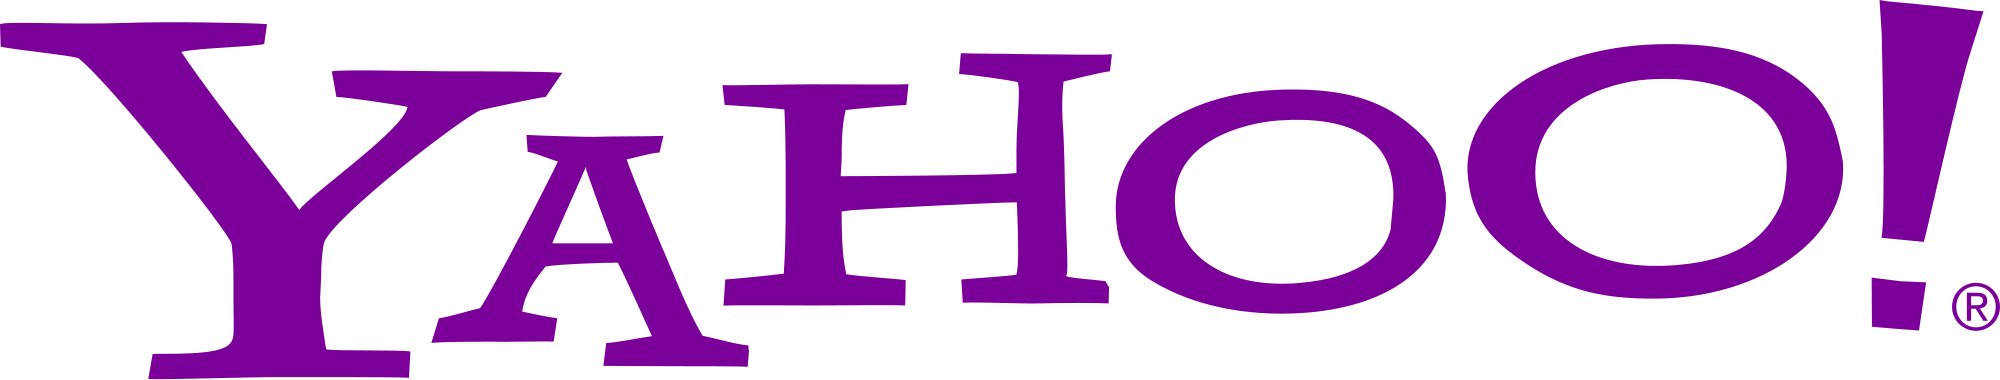 Yahoo transparent logo free image #40438